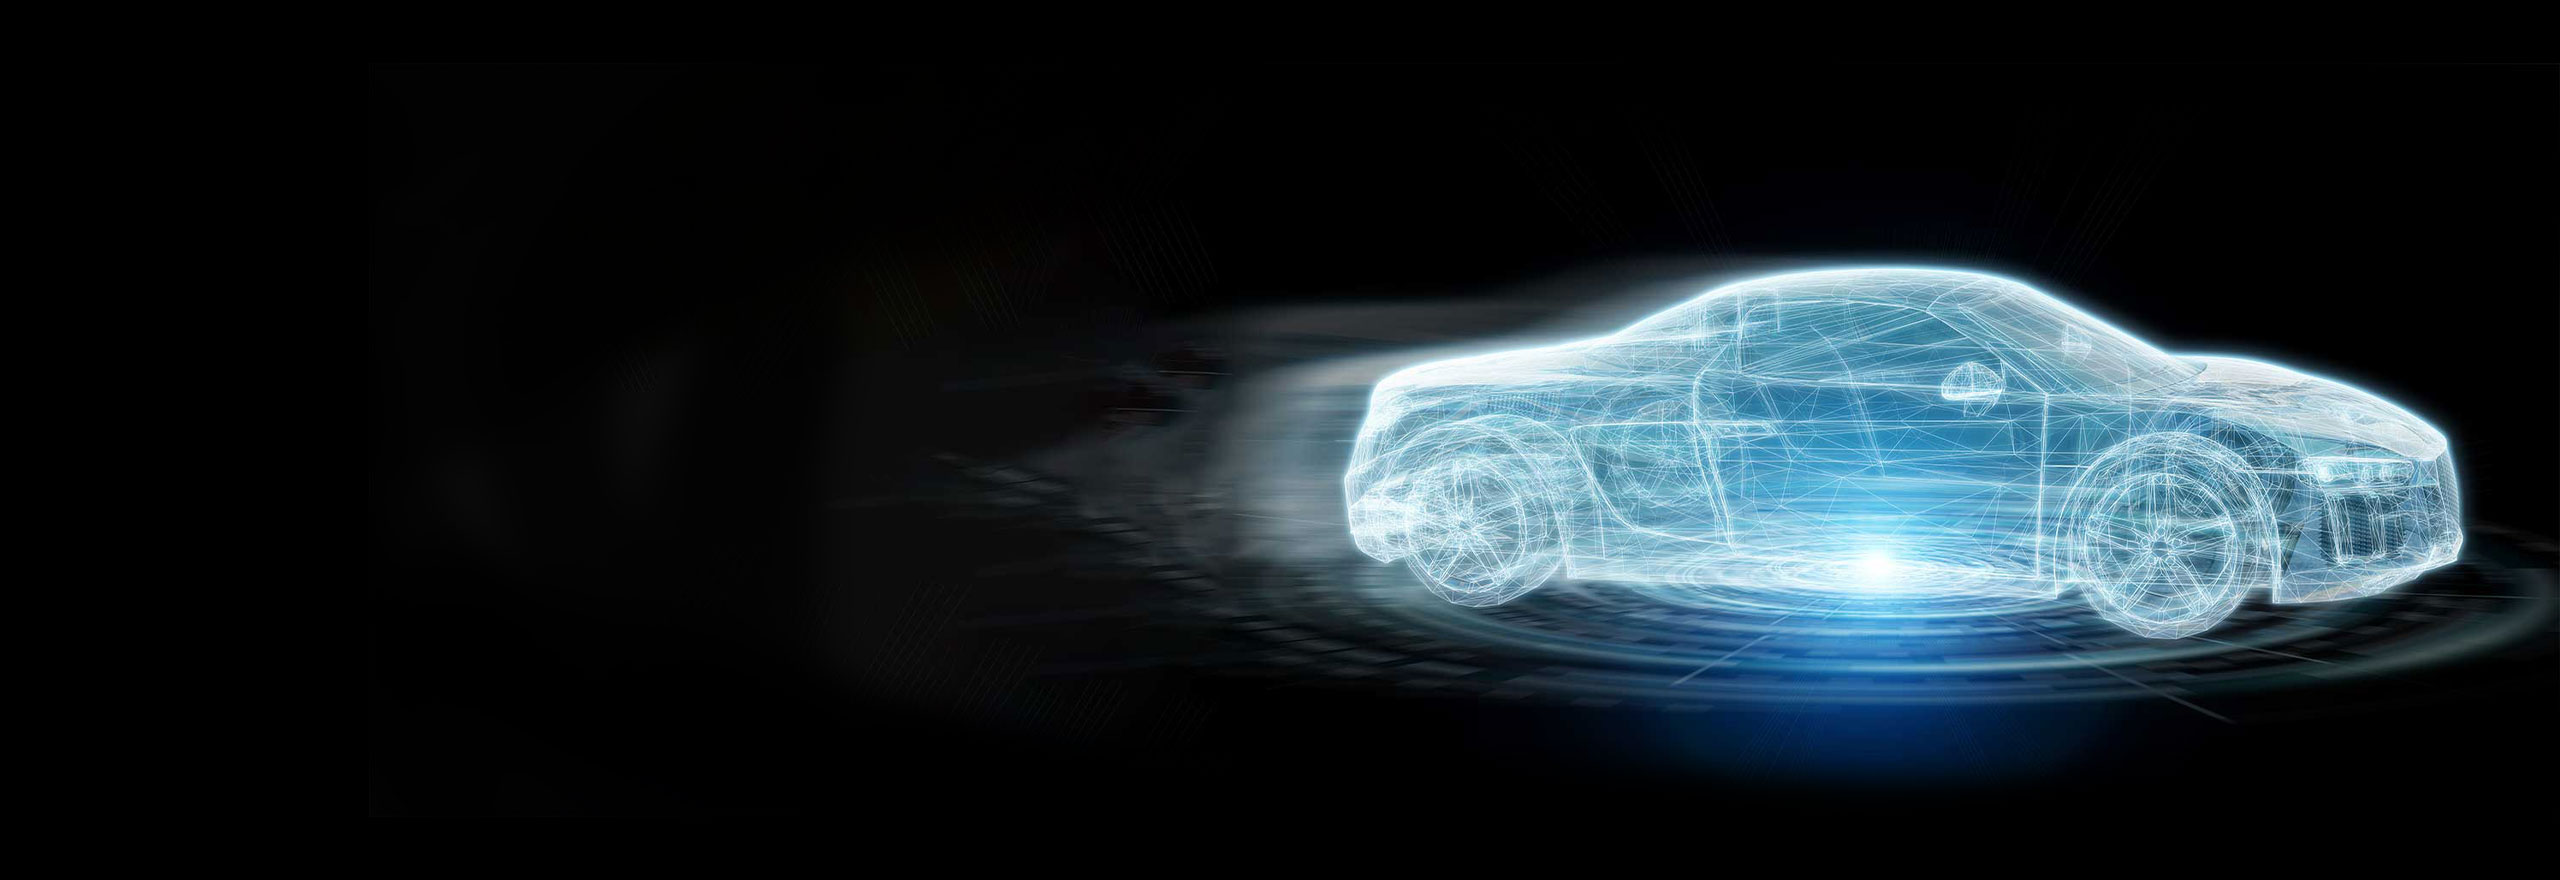 image conceptuelle d’un véhicule électrique